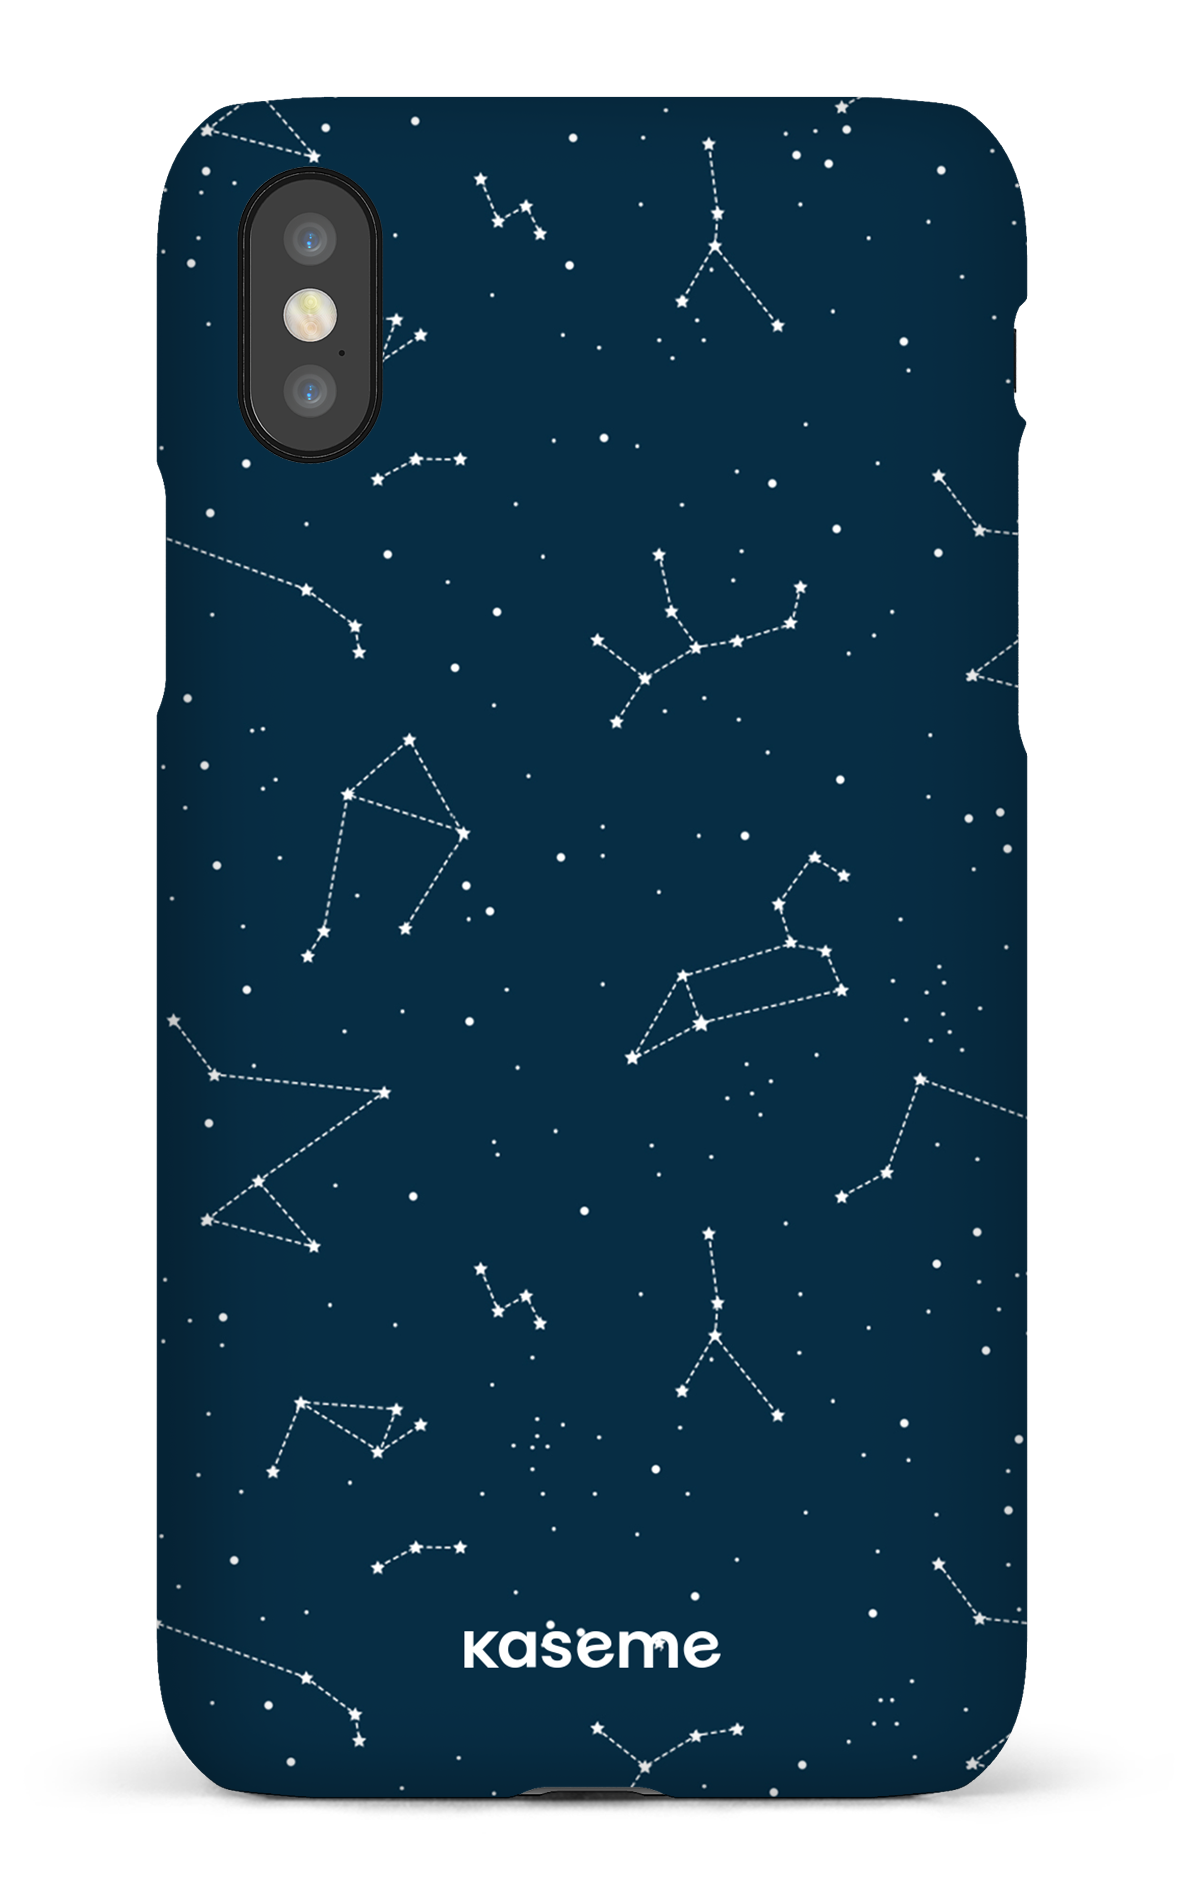 Cosmos - iPhone X/XS